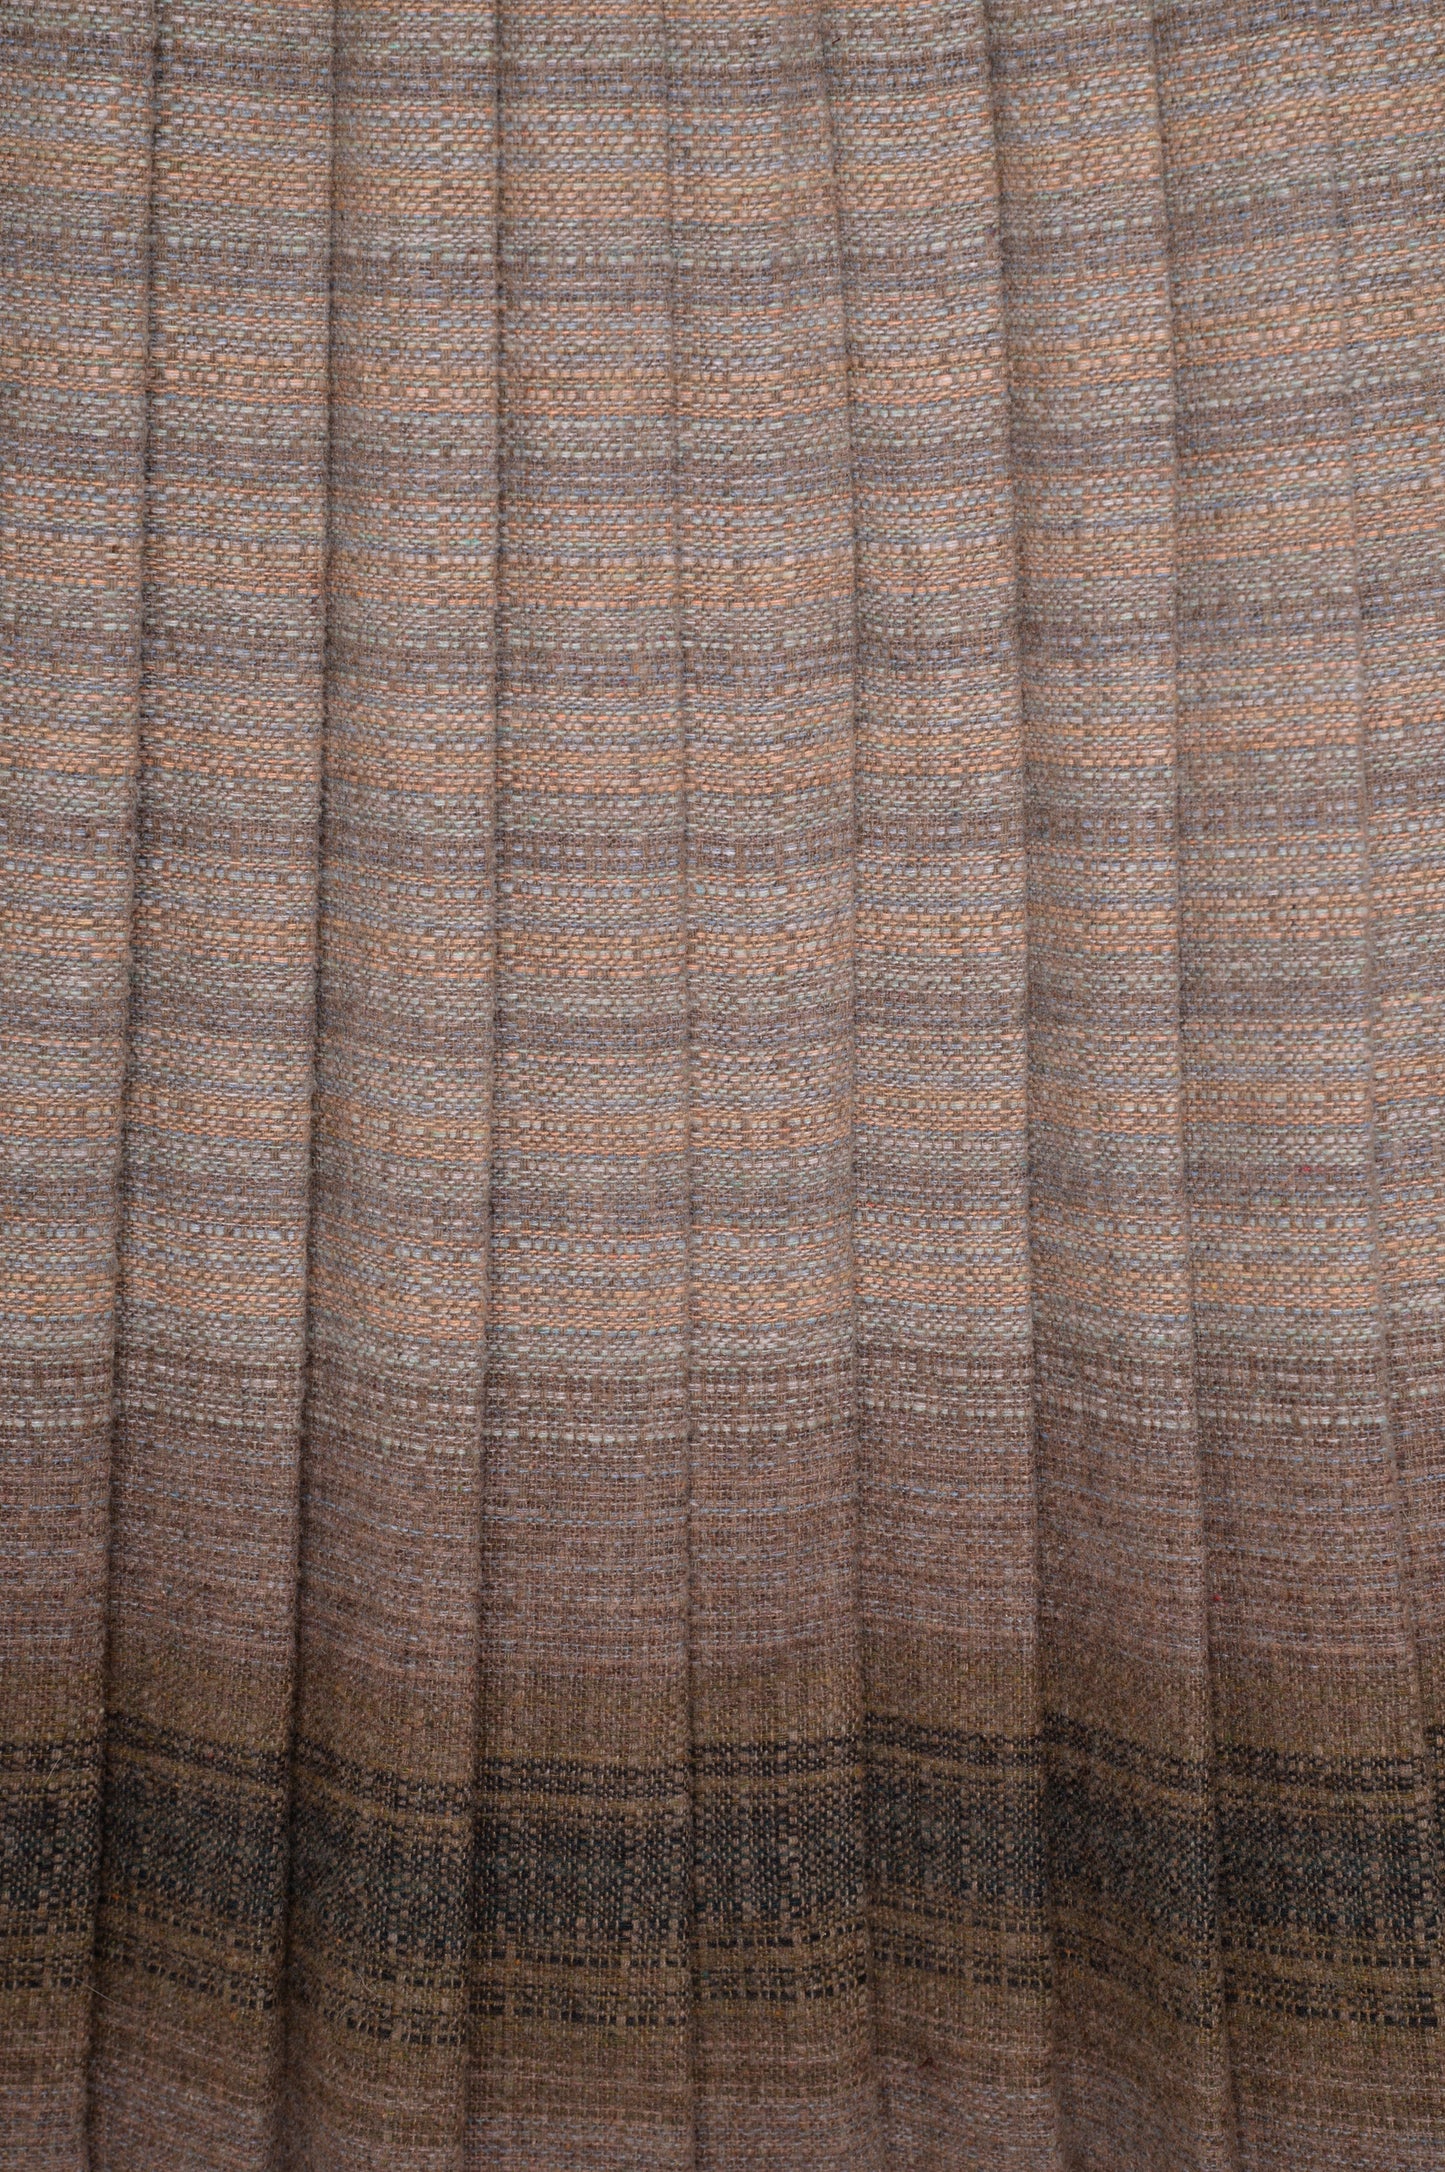 Wool Pleated Skirt